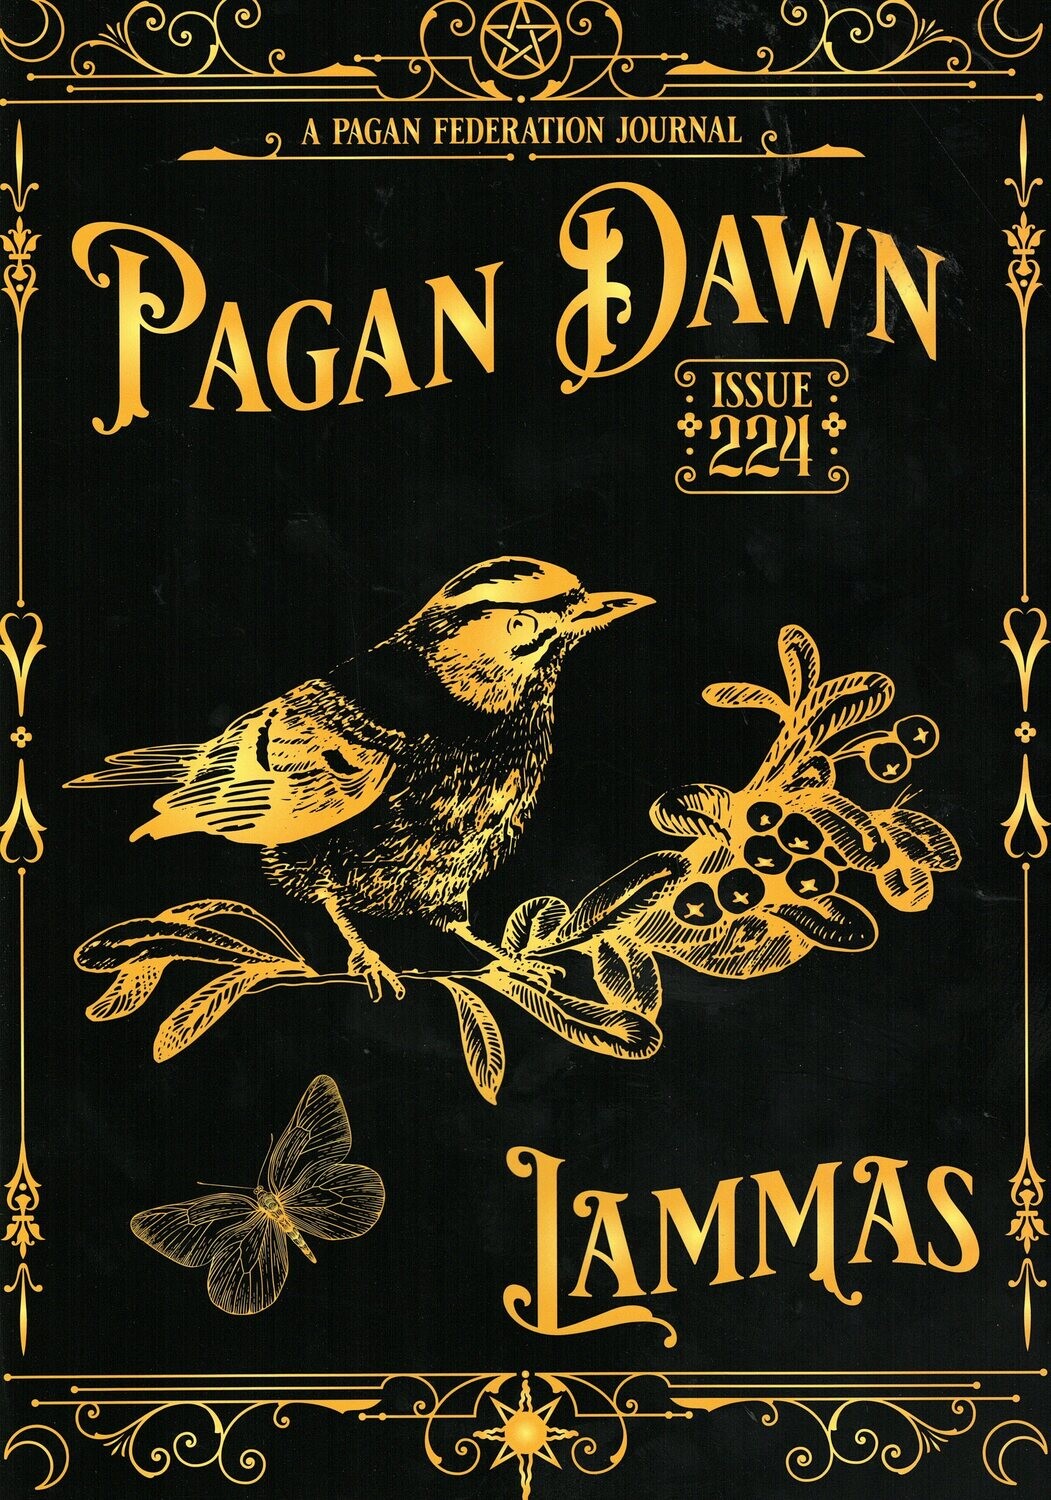 Pagan Dawn #224 Lammas 2022